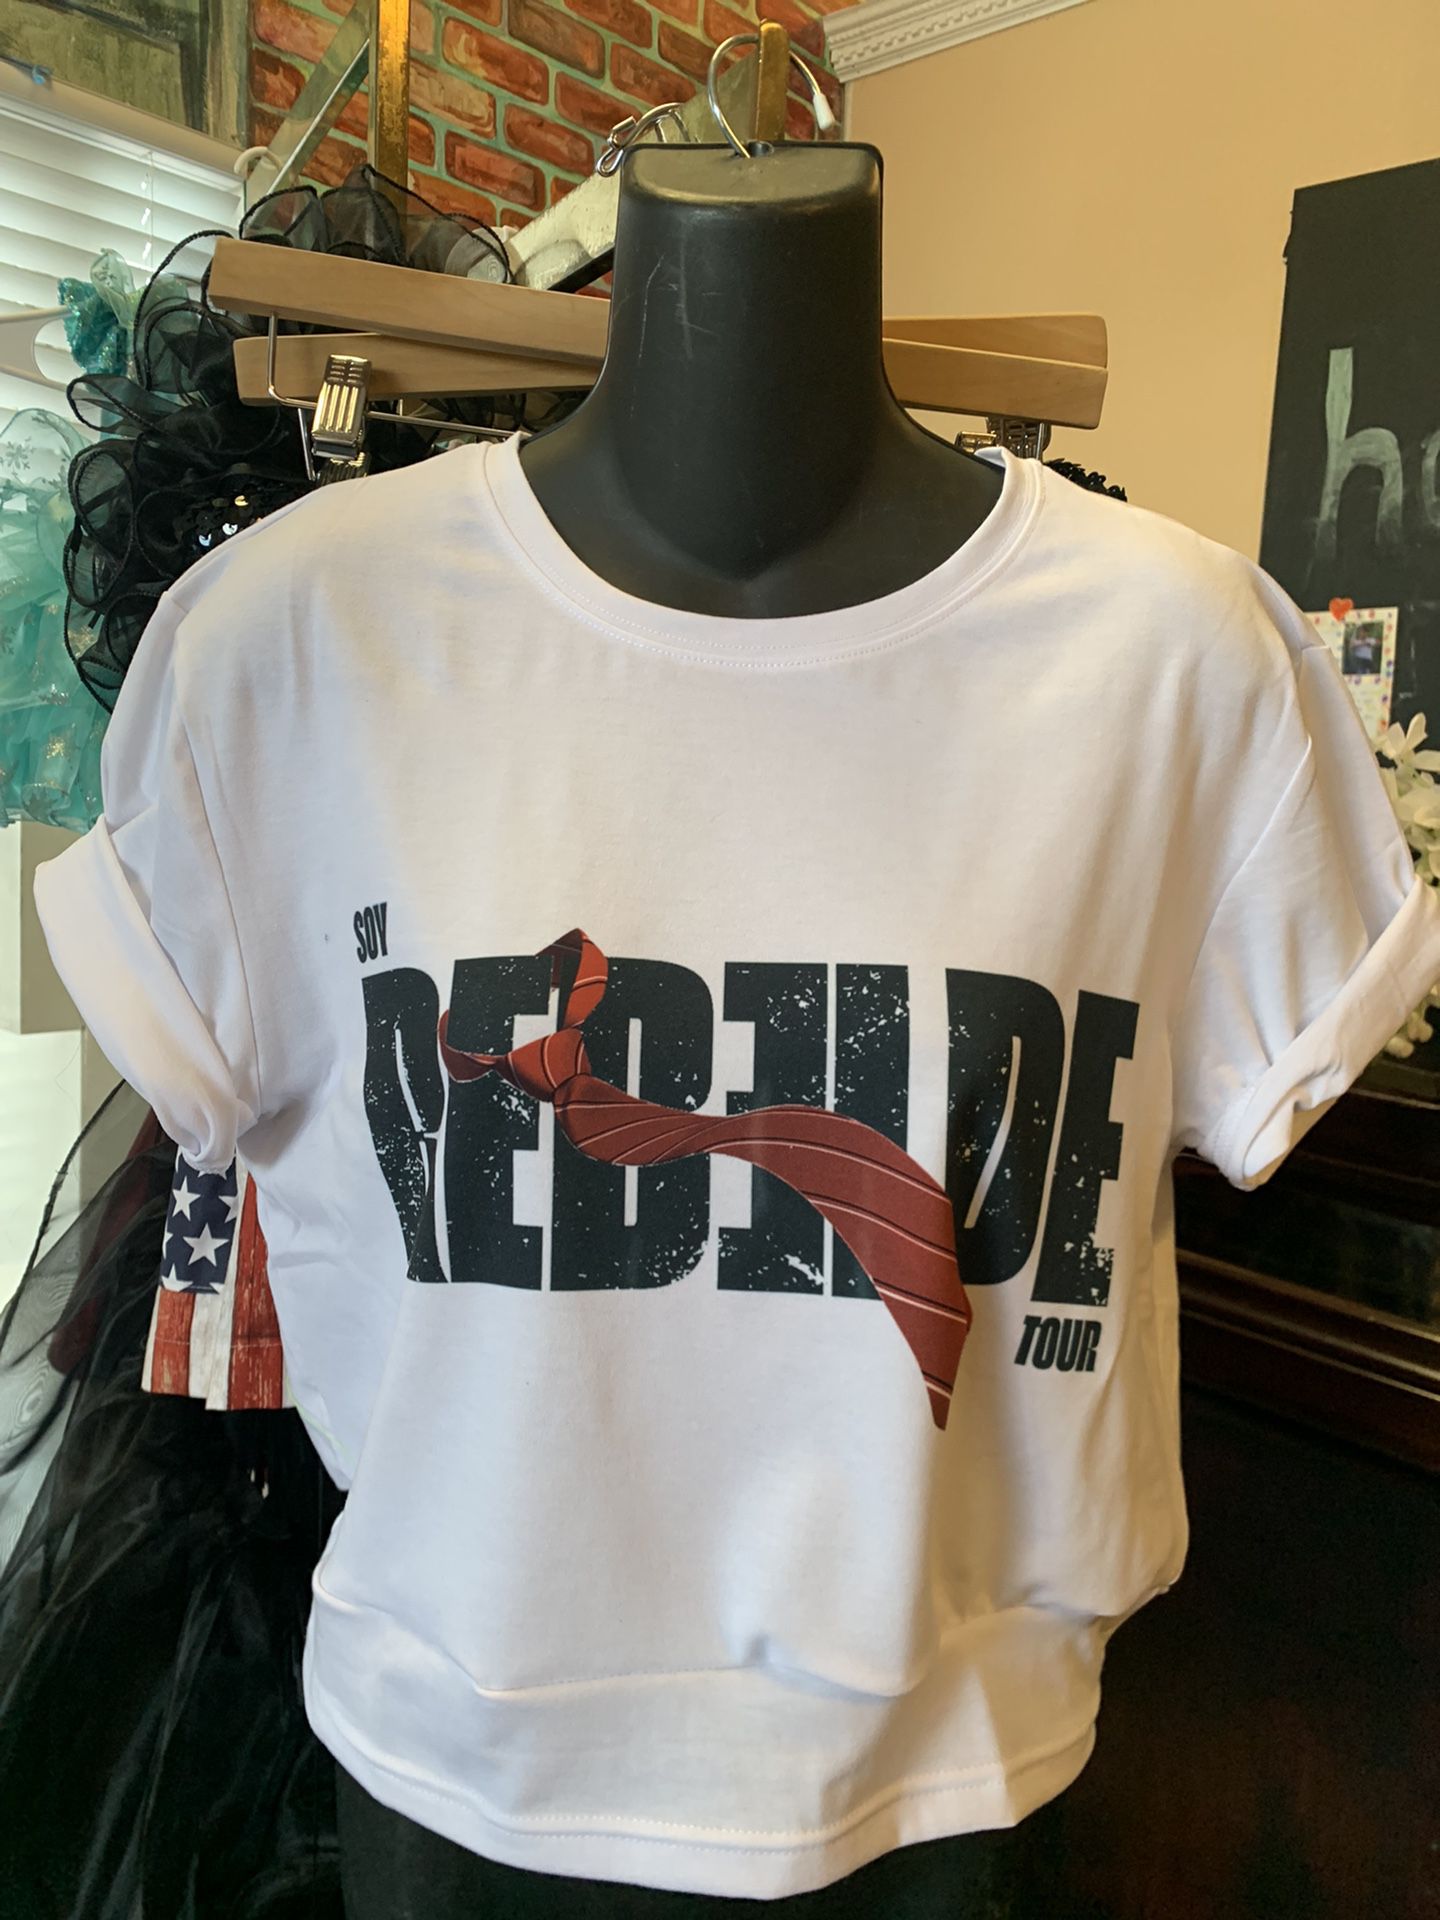 Rebelde Shirt